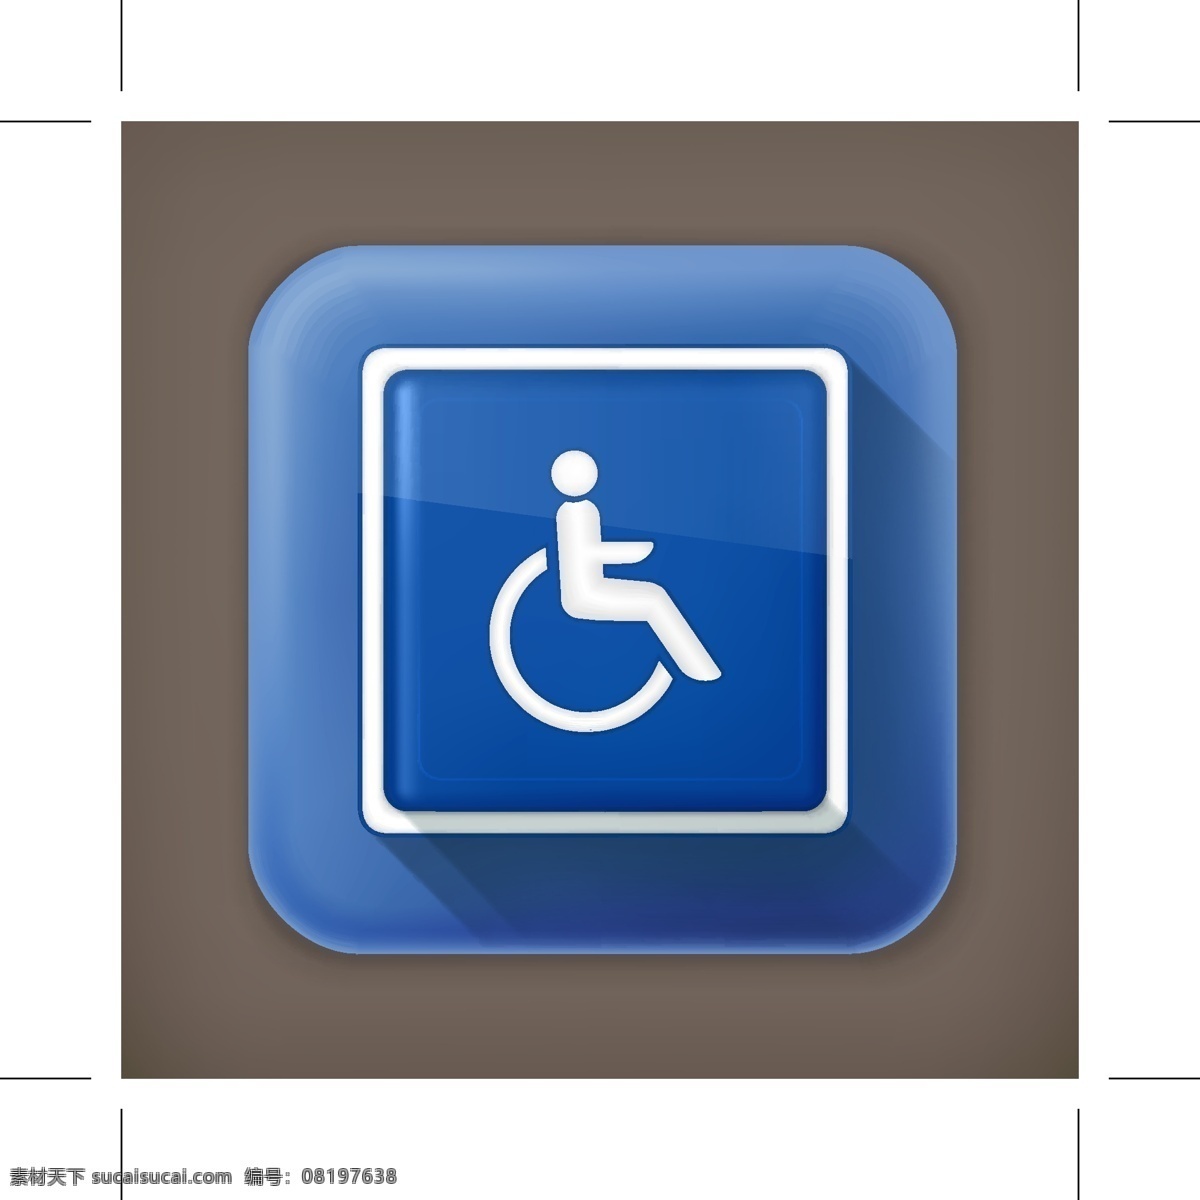 残疾人员图标 残疾 人员 图标 矢量素材 设计素材 背景素材